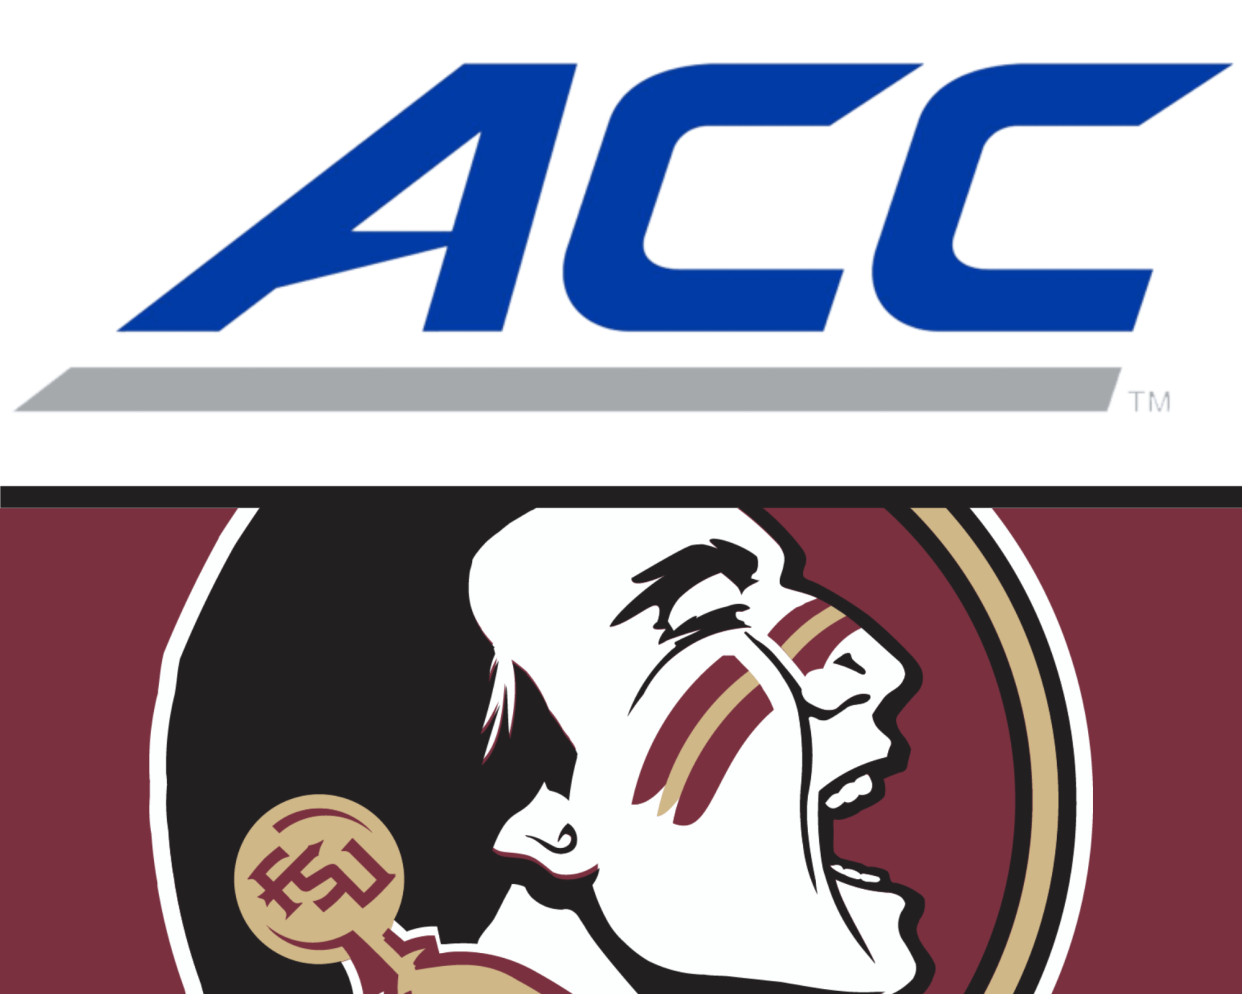 ACC and FSU logos